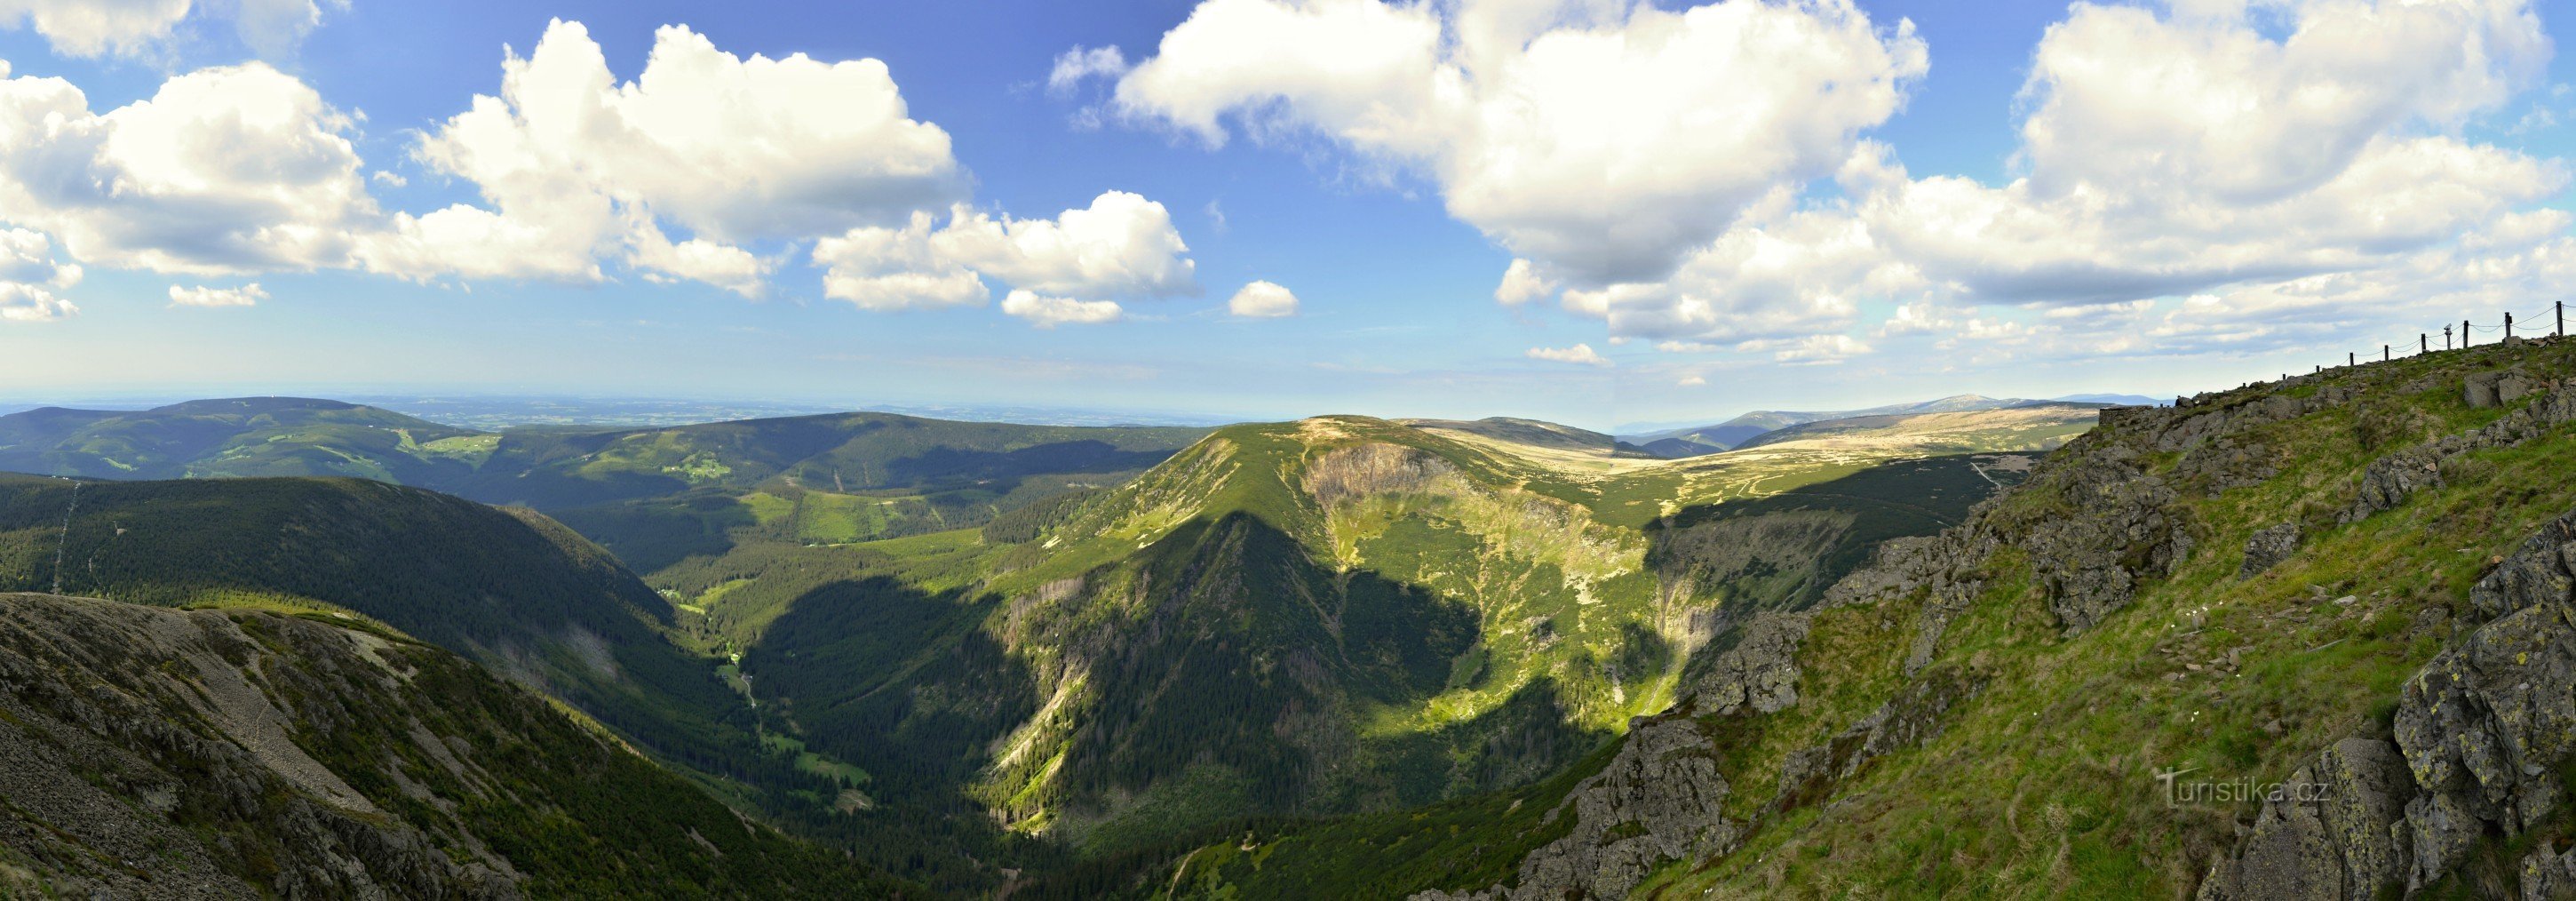 Krkonošebergen: panorama från Sněžka mot jättegruvan